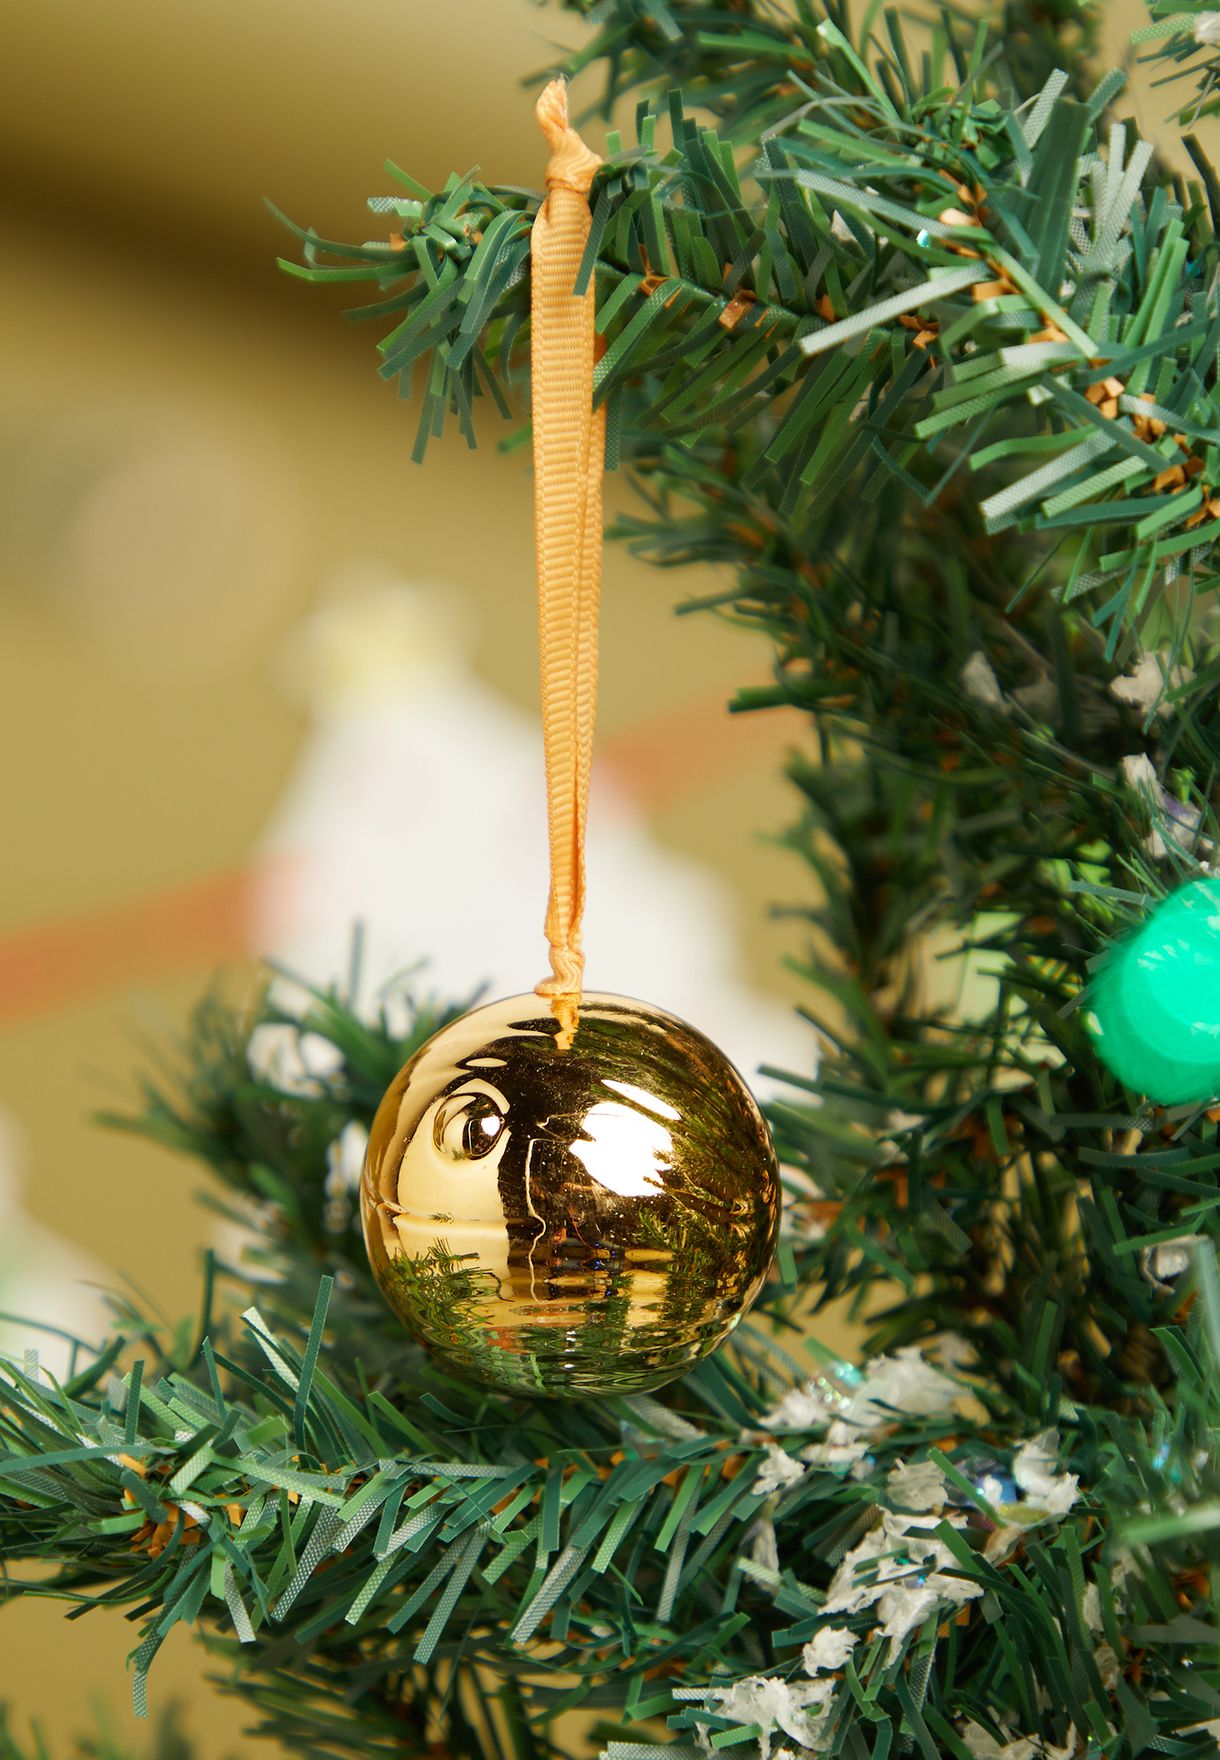 قطعة ديكورمستوحاة من هاري بوتر لشجرة عيد الميلاد